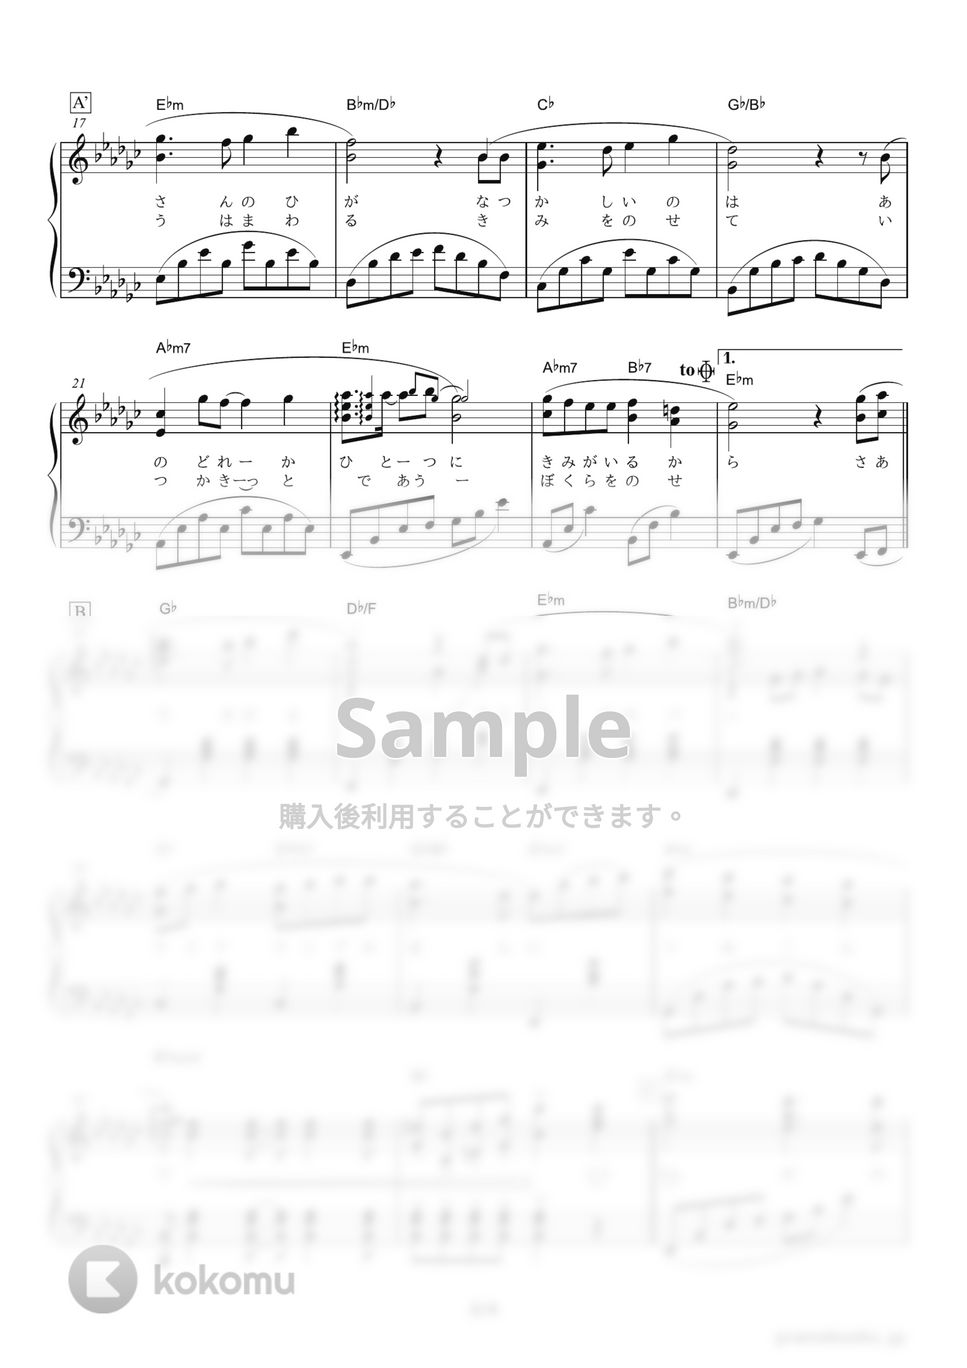 井上あずみ - 君をのせて (映画『天空の城ラピュタ』エンディングテーマ) by ピアノの本棚